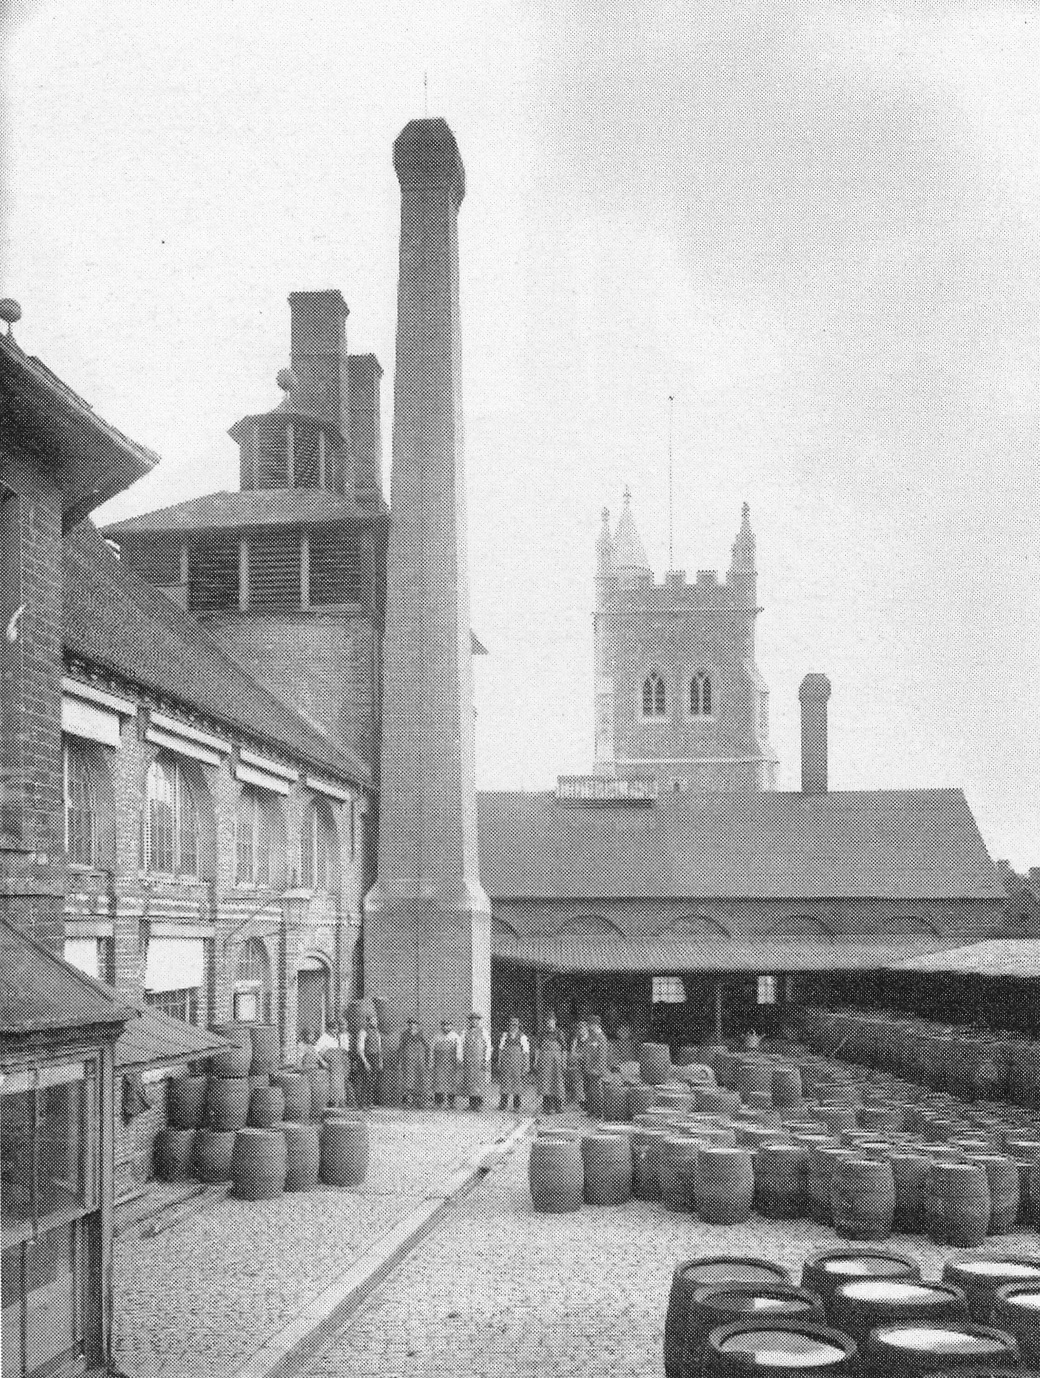 Amersham Brewery Yard in 1889